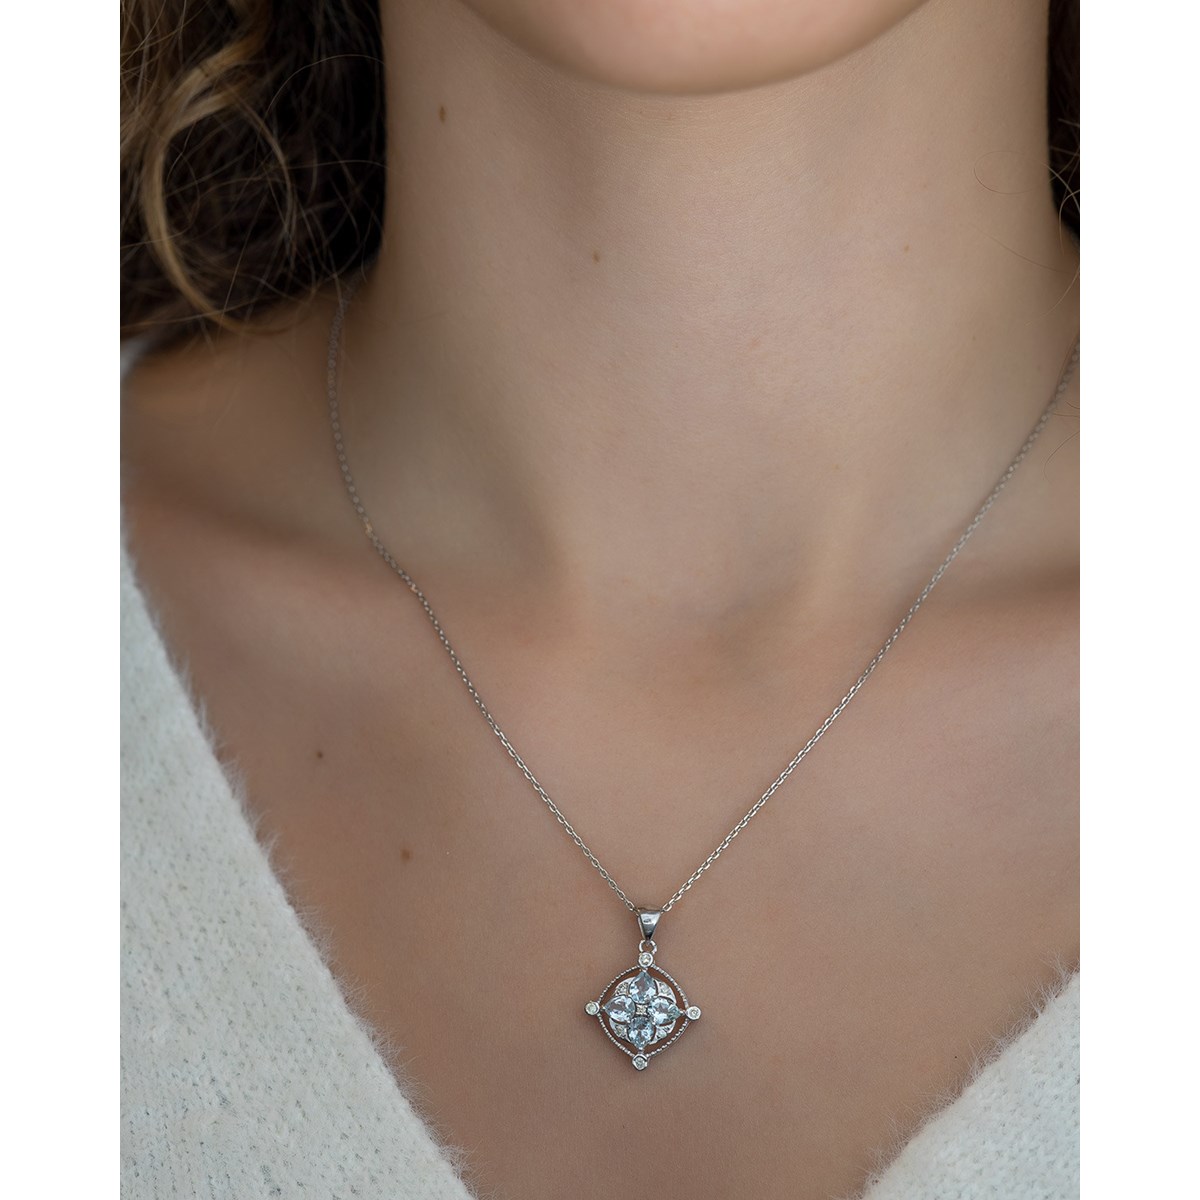 Collier Pendentif Or Blanc Médaillon Aigue-Marine et Diamants - Bijou d'Exception pour un Anniversaire Inoubliable | Aden - vue 4